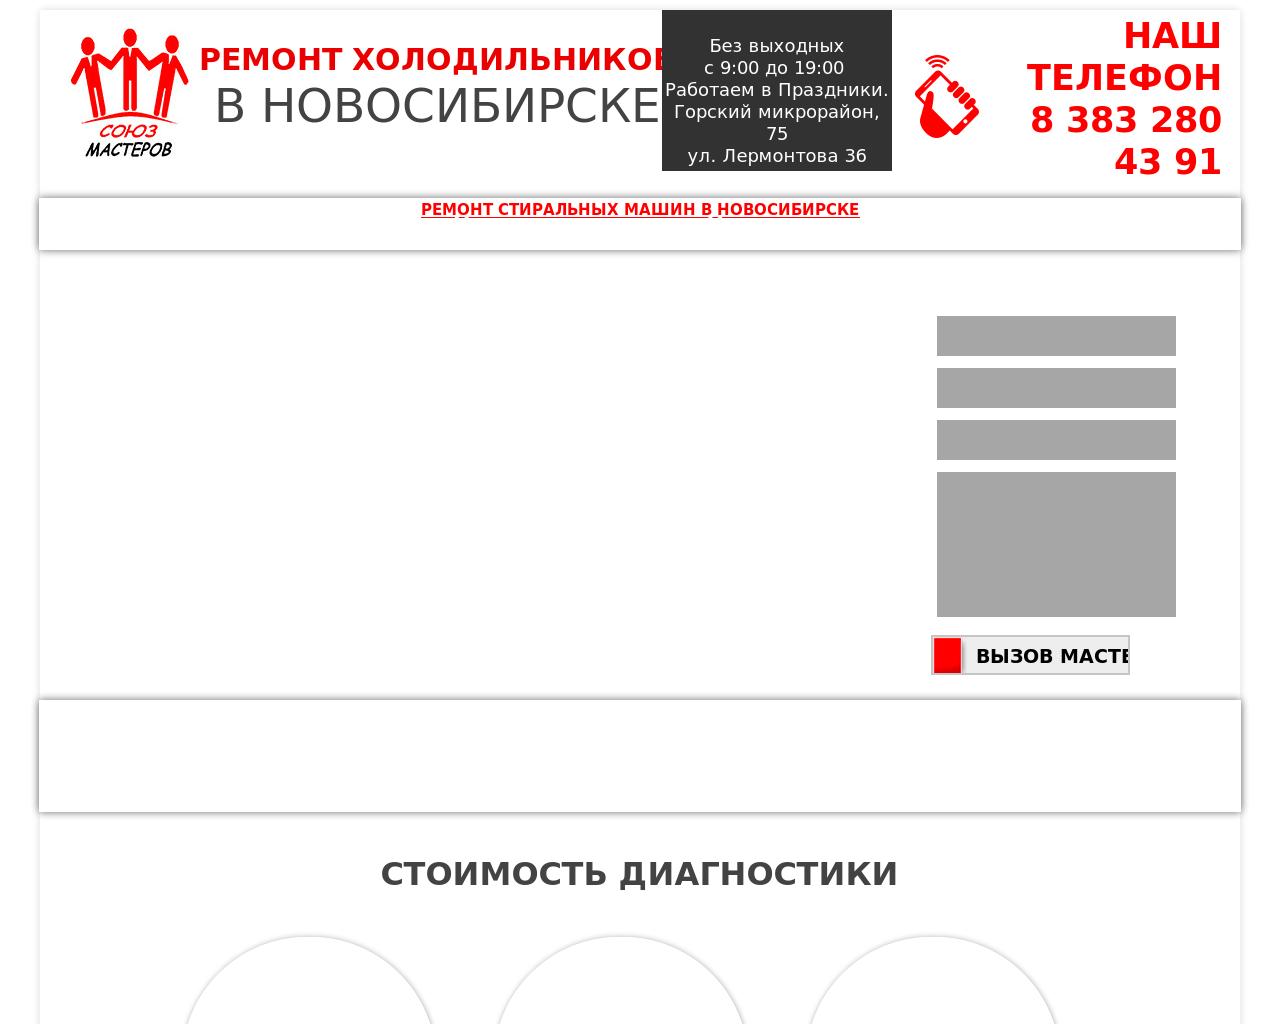 Изображение сайта ремонт-холодильников-в-новосибирске.рф в разрешении 1280x1024